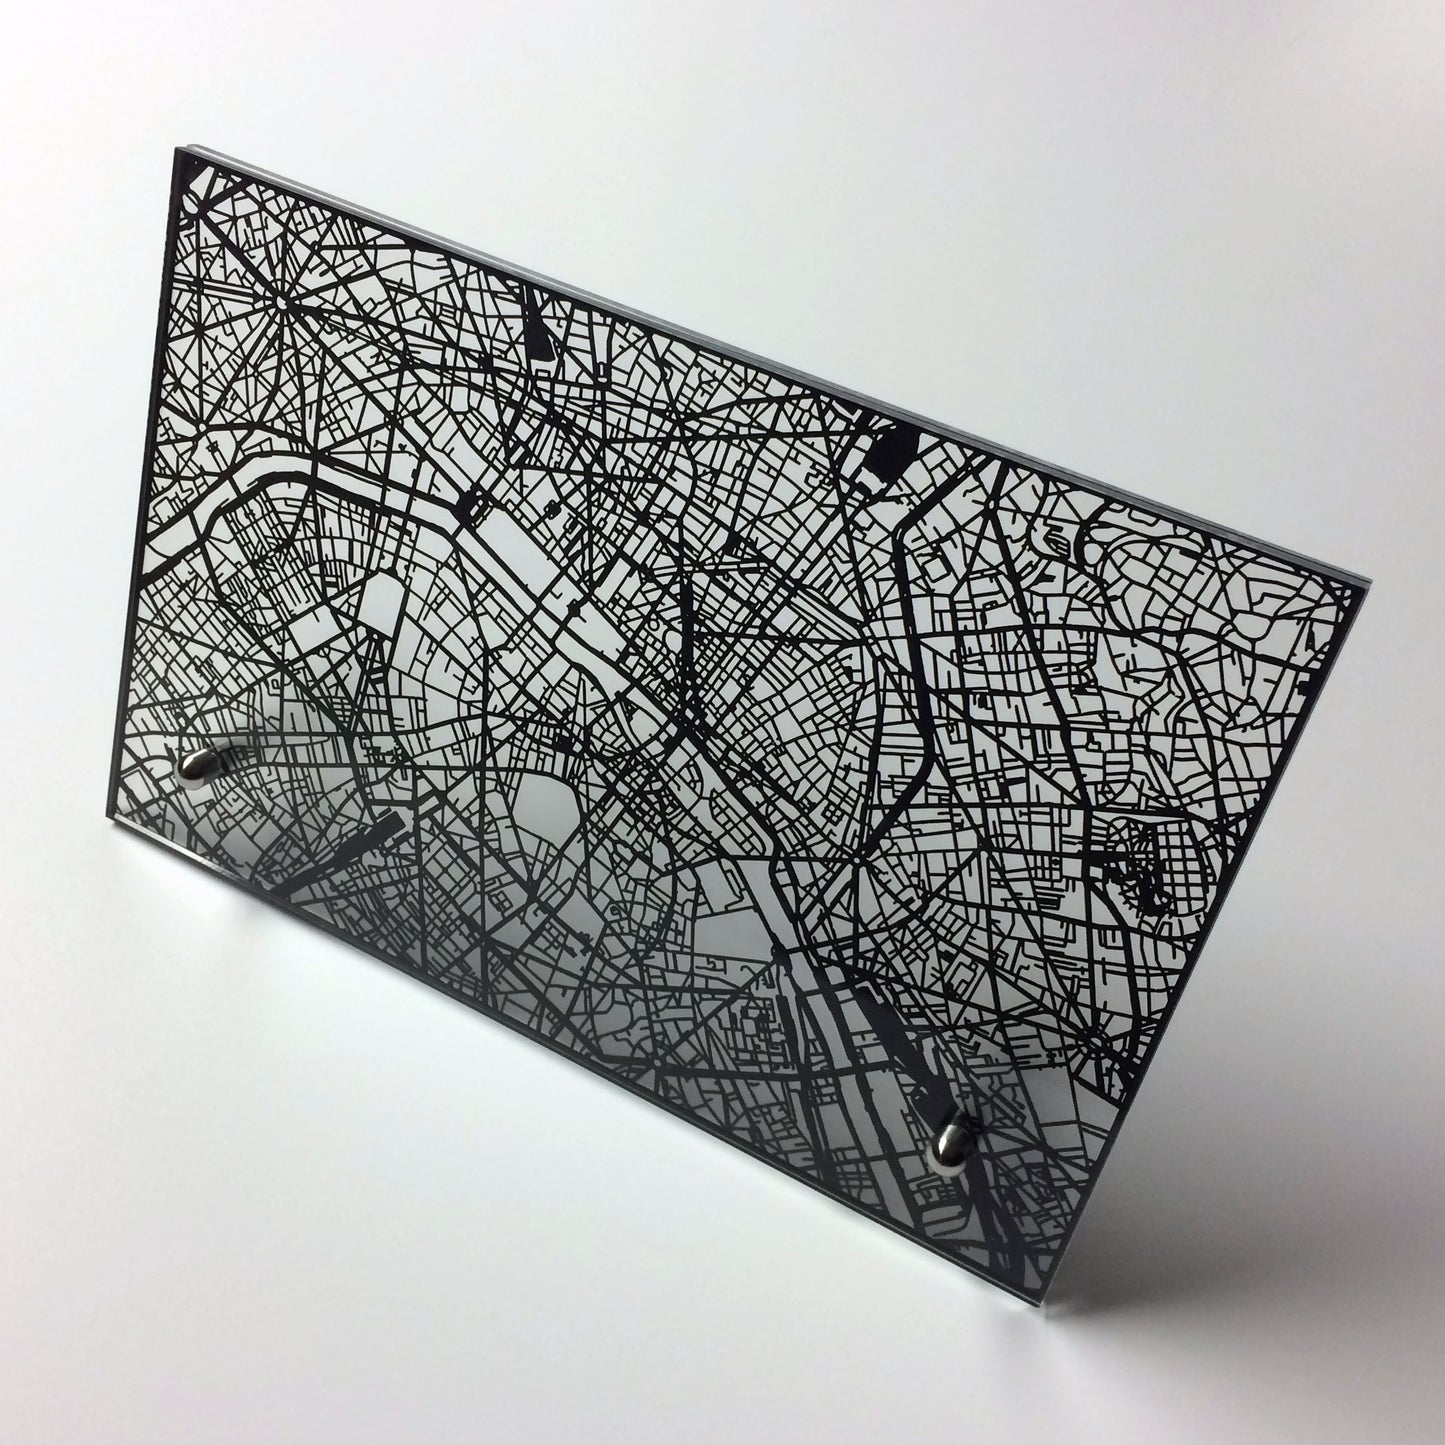 Paris France laser cut desk map - CarbonLight